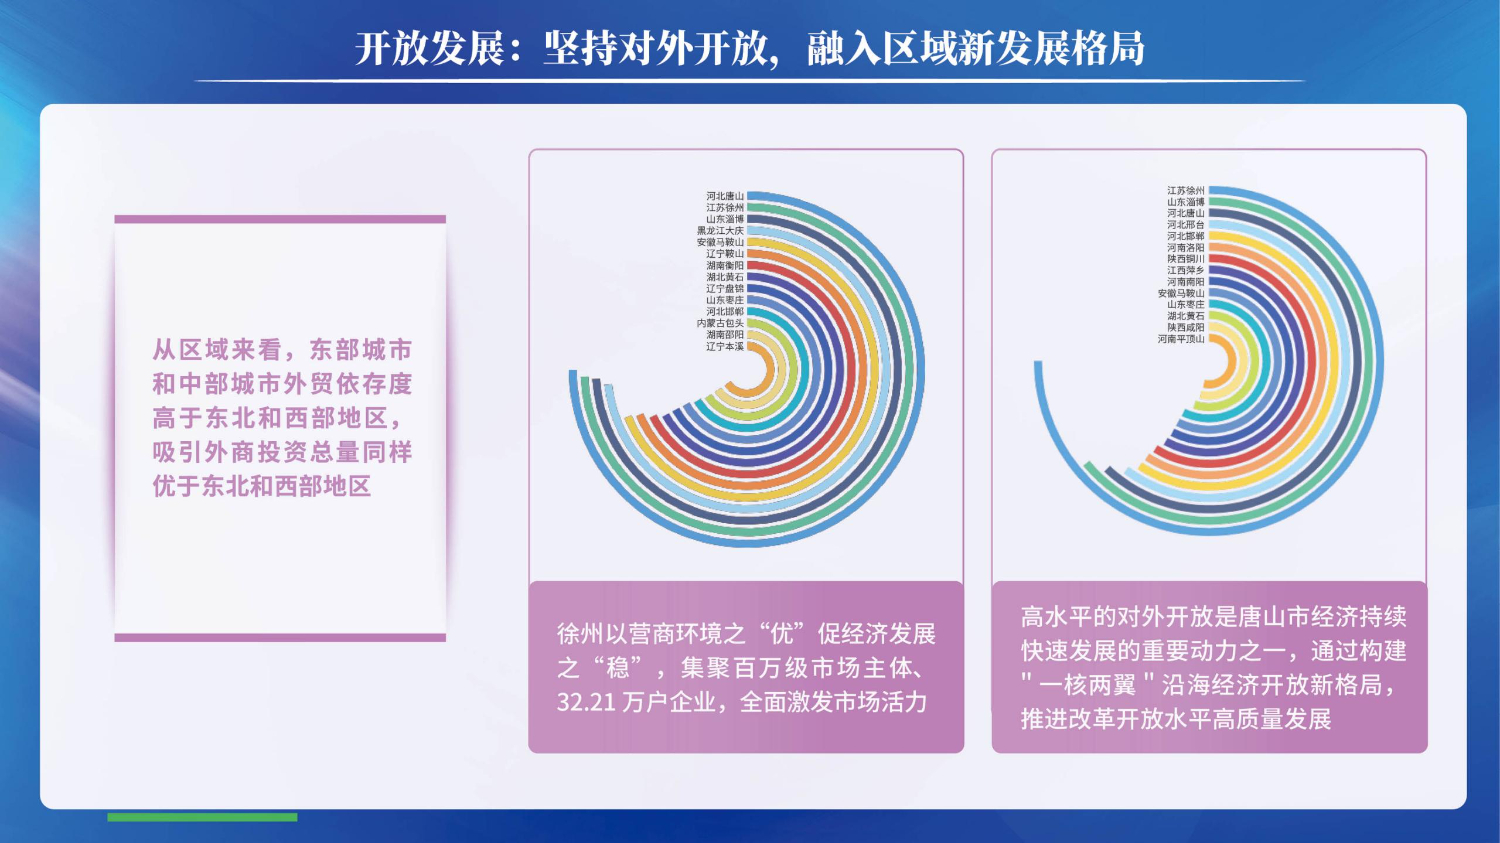 06201503中国资源型城市转型发展指数(1)_19.jpg